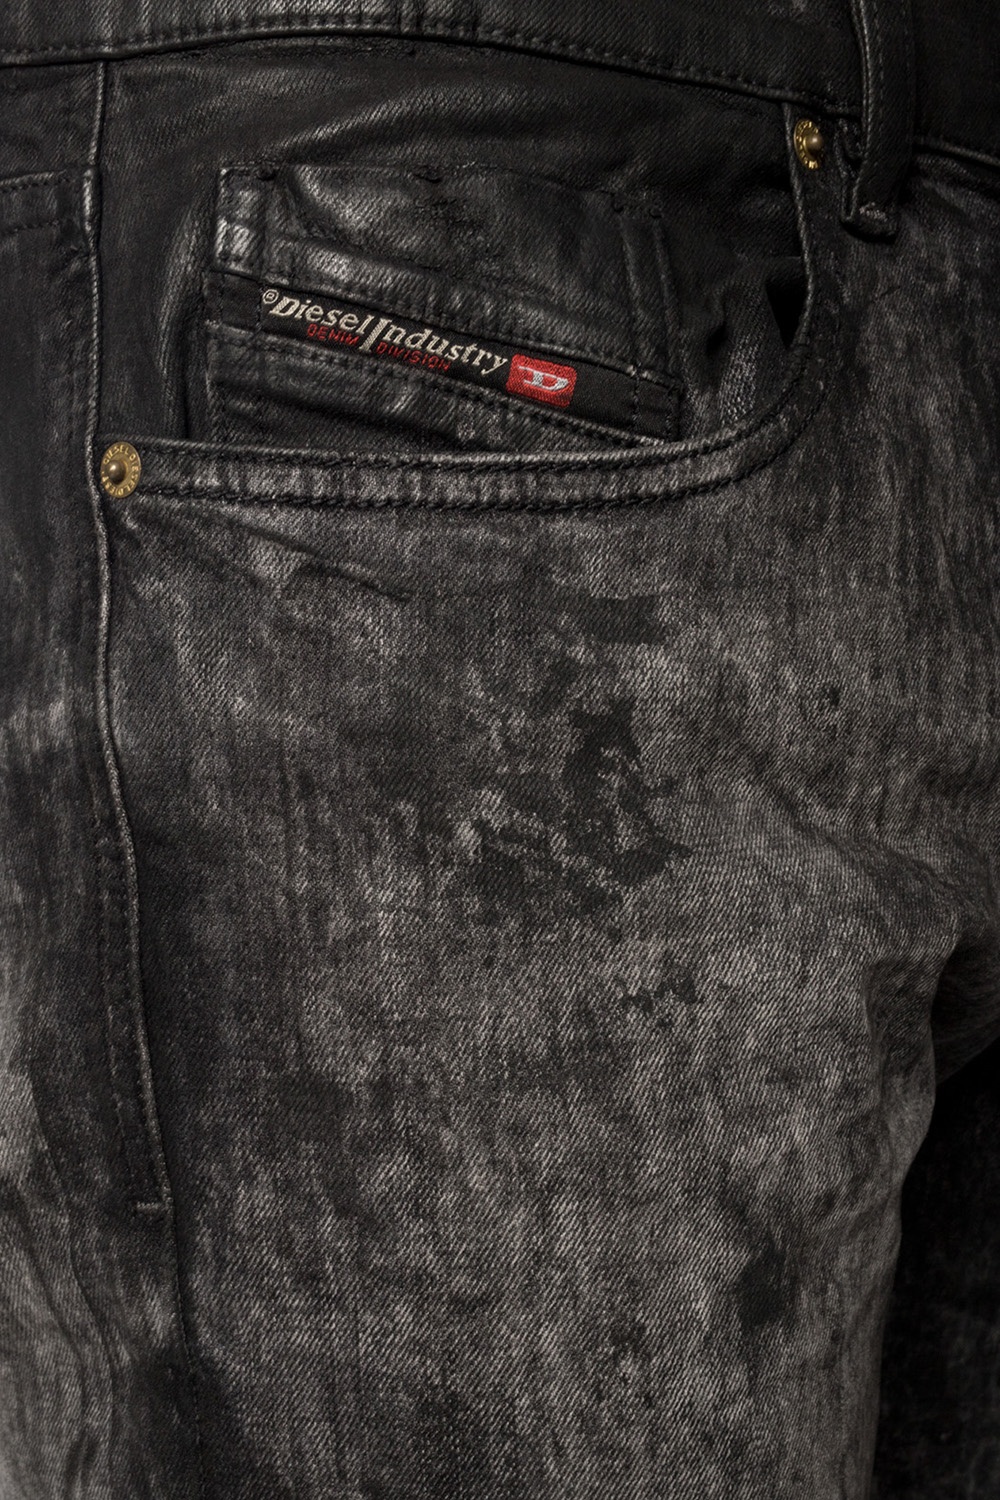 diesel black distressed jeans